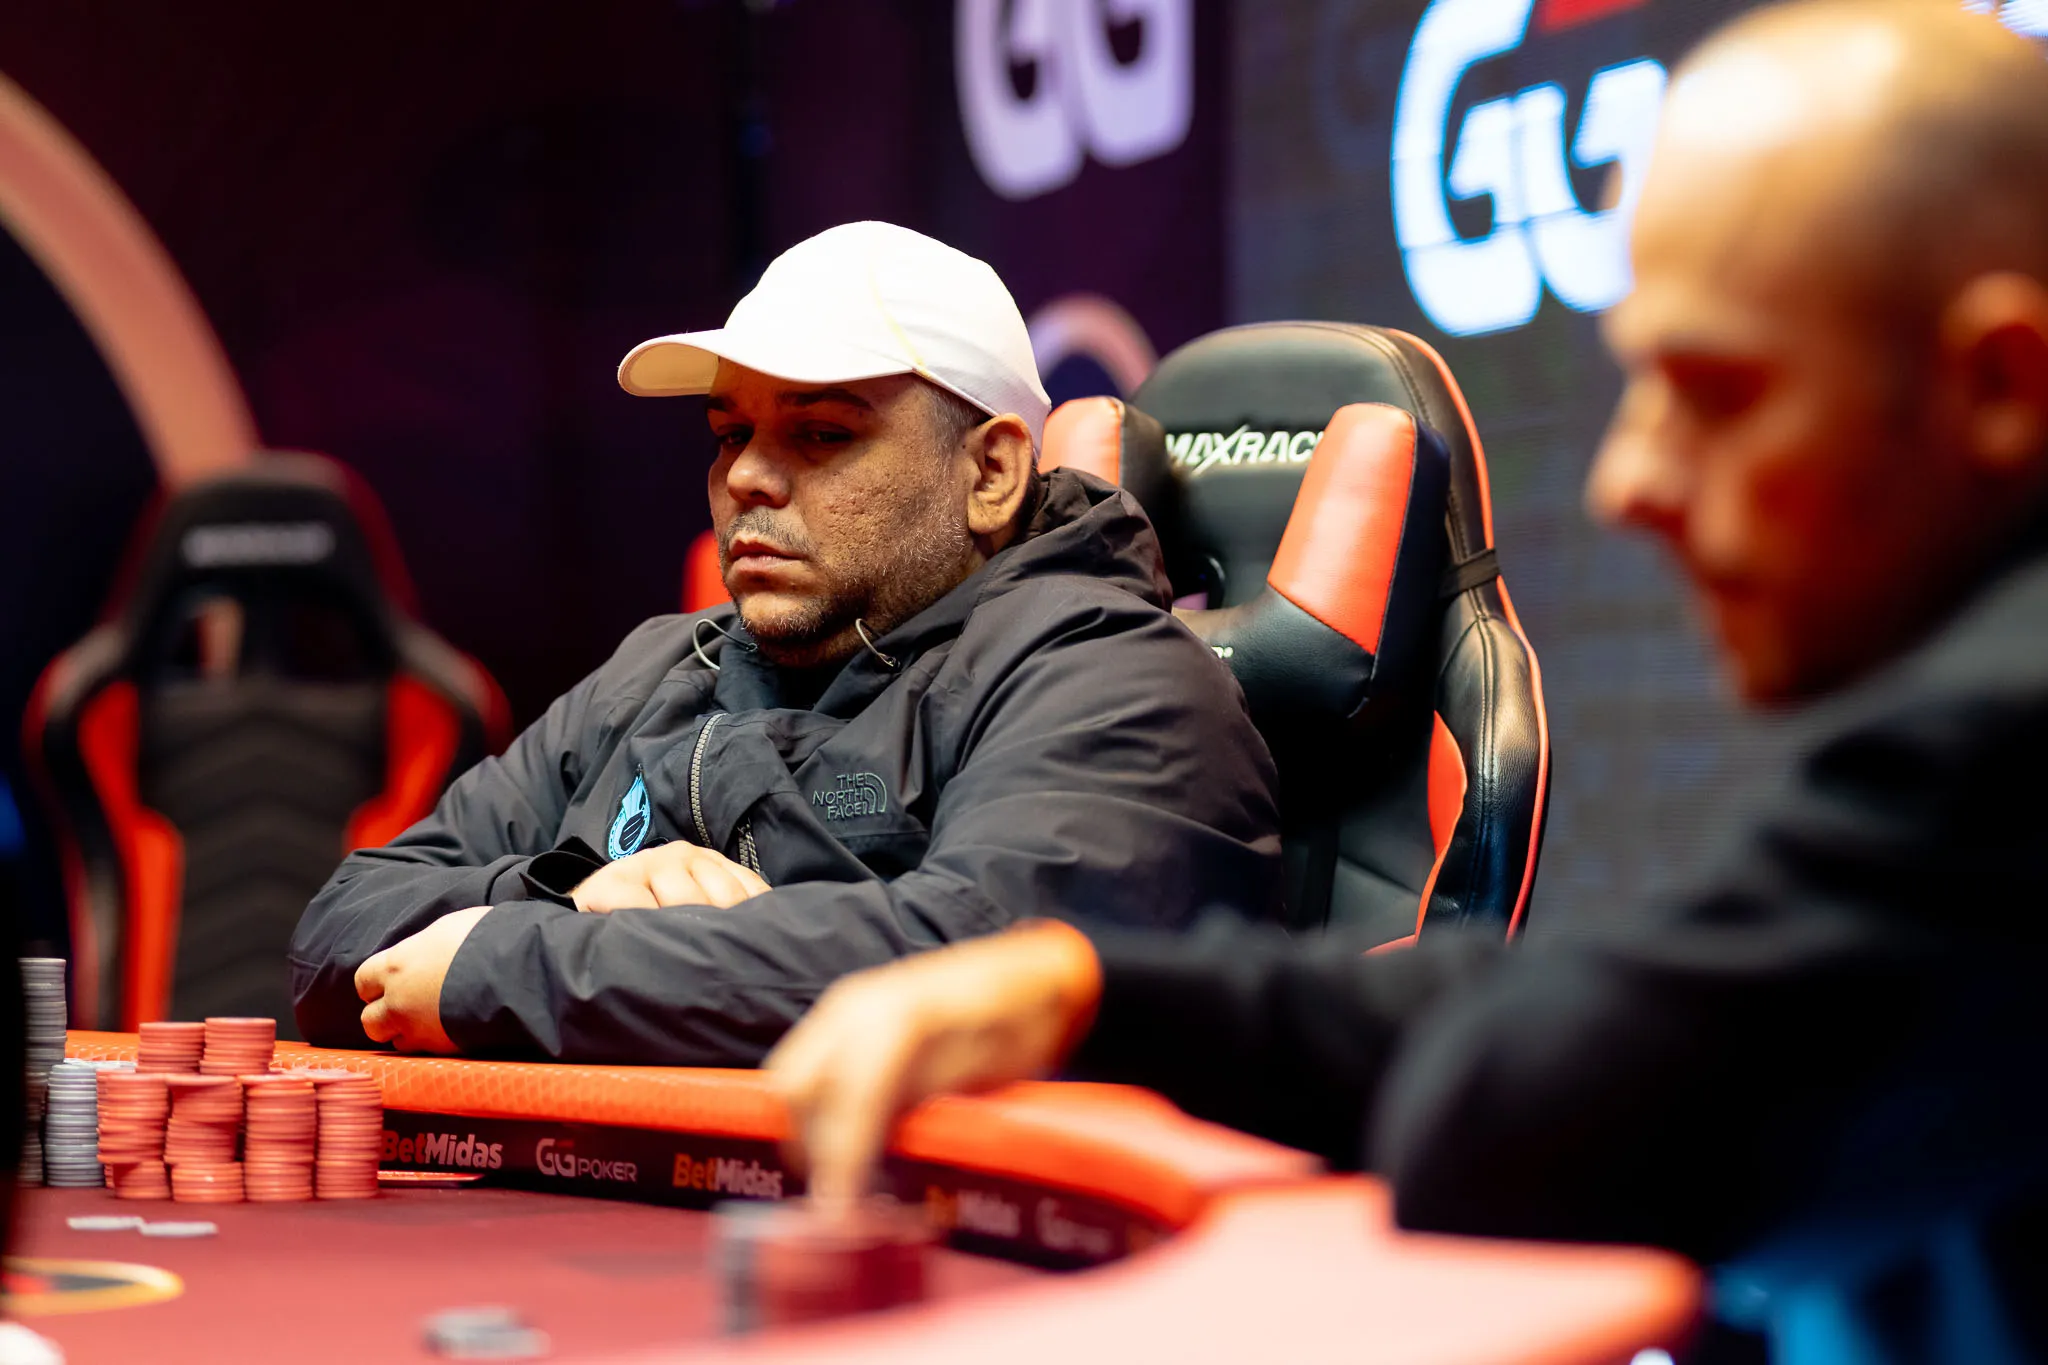 Leonardo Azevedo forra alto na série OSS do ACR Poker; veja